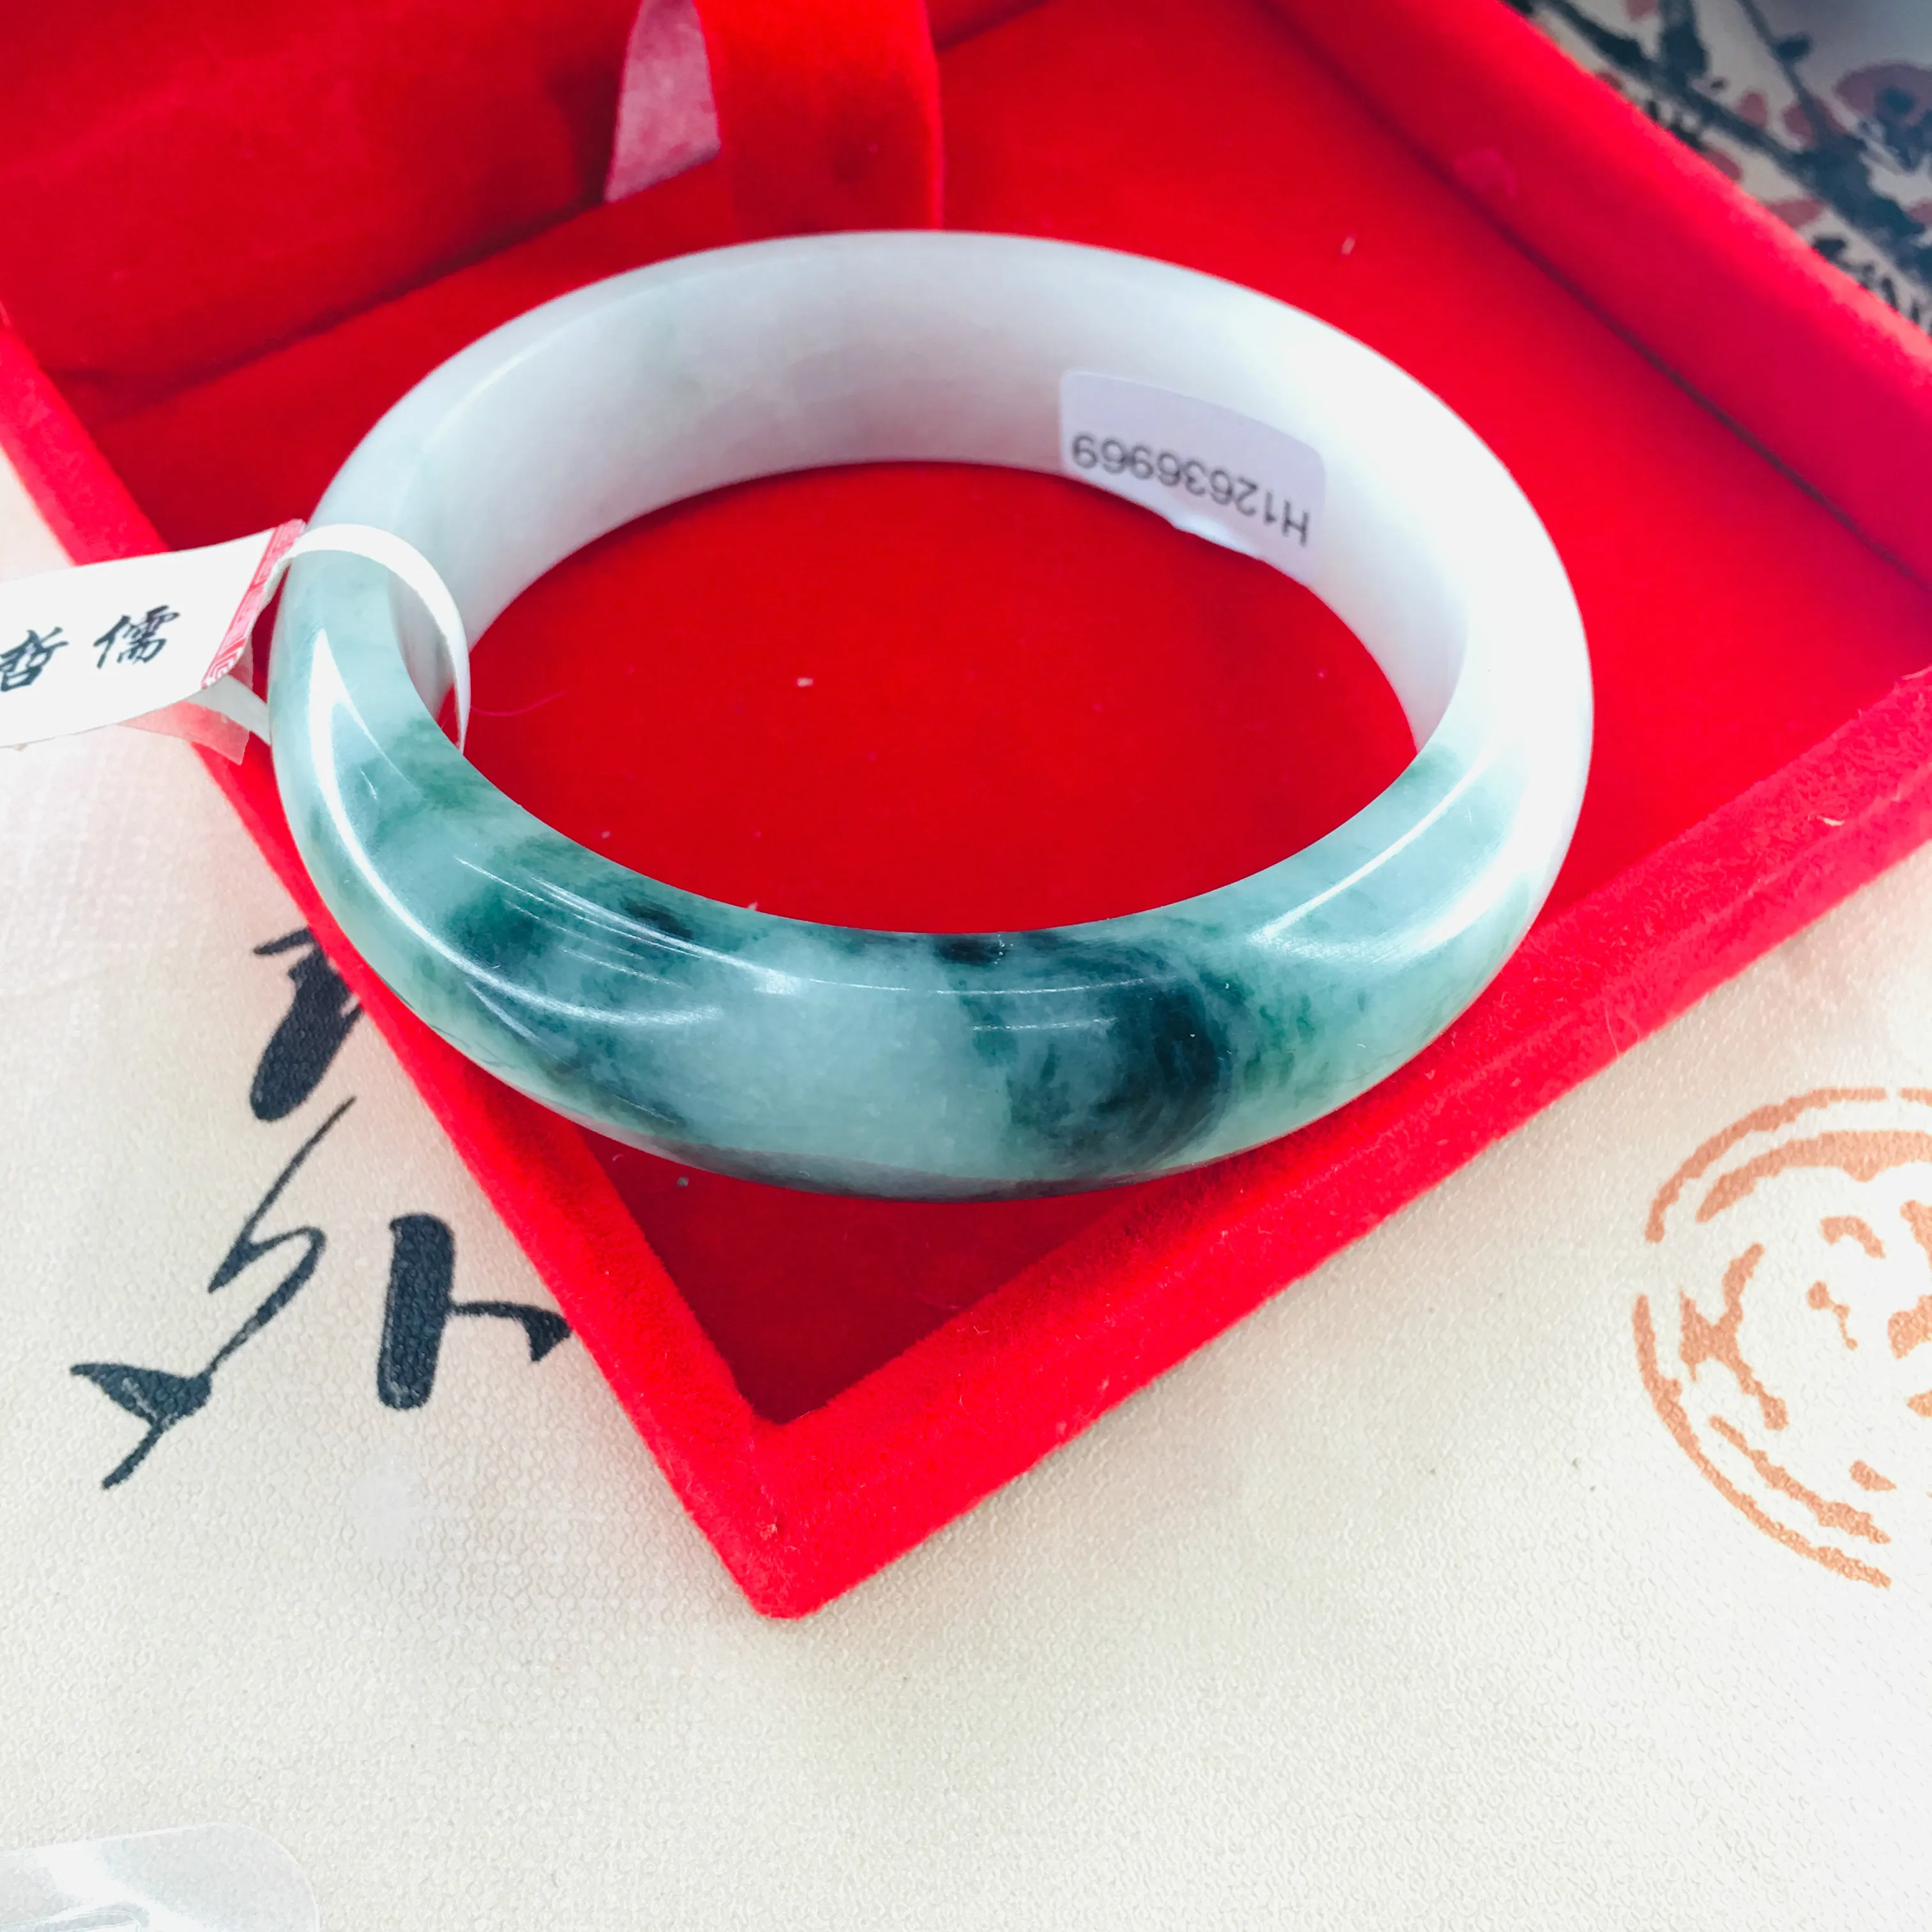 Zhe Ru ювелирные изделия чистый натуральный жадеитовый браслет натуральный полусиний биколор 54-62 мм Женский нефритовый браслет подарок